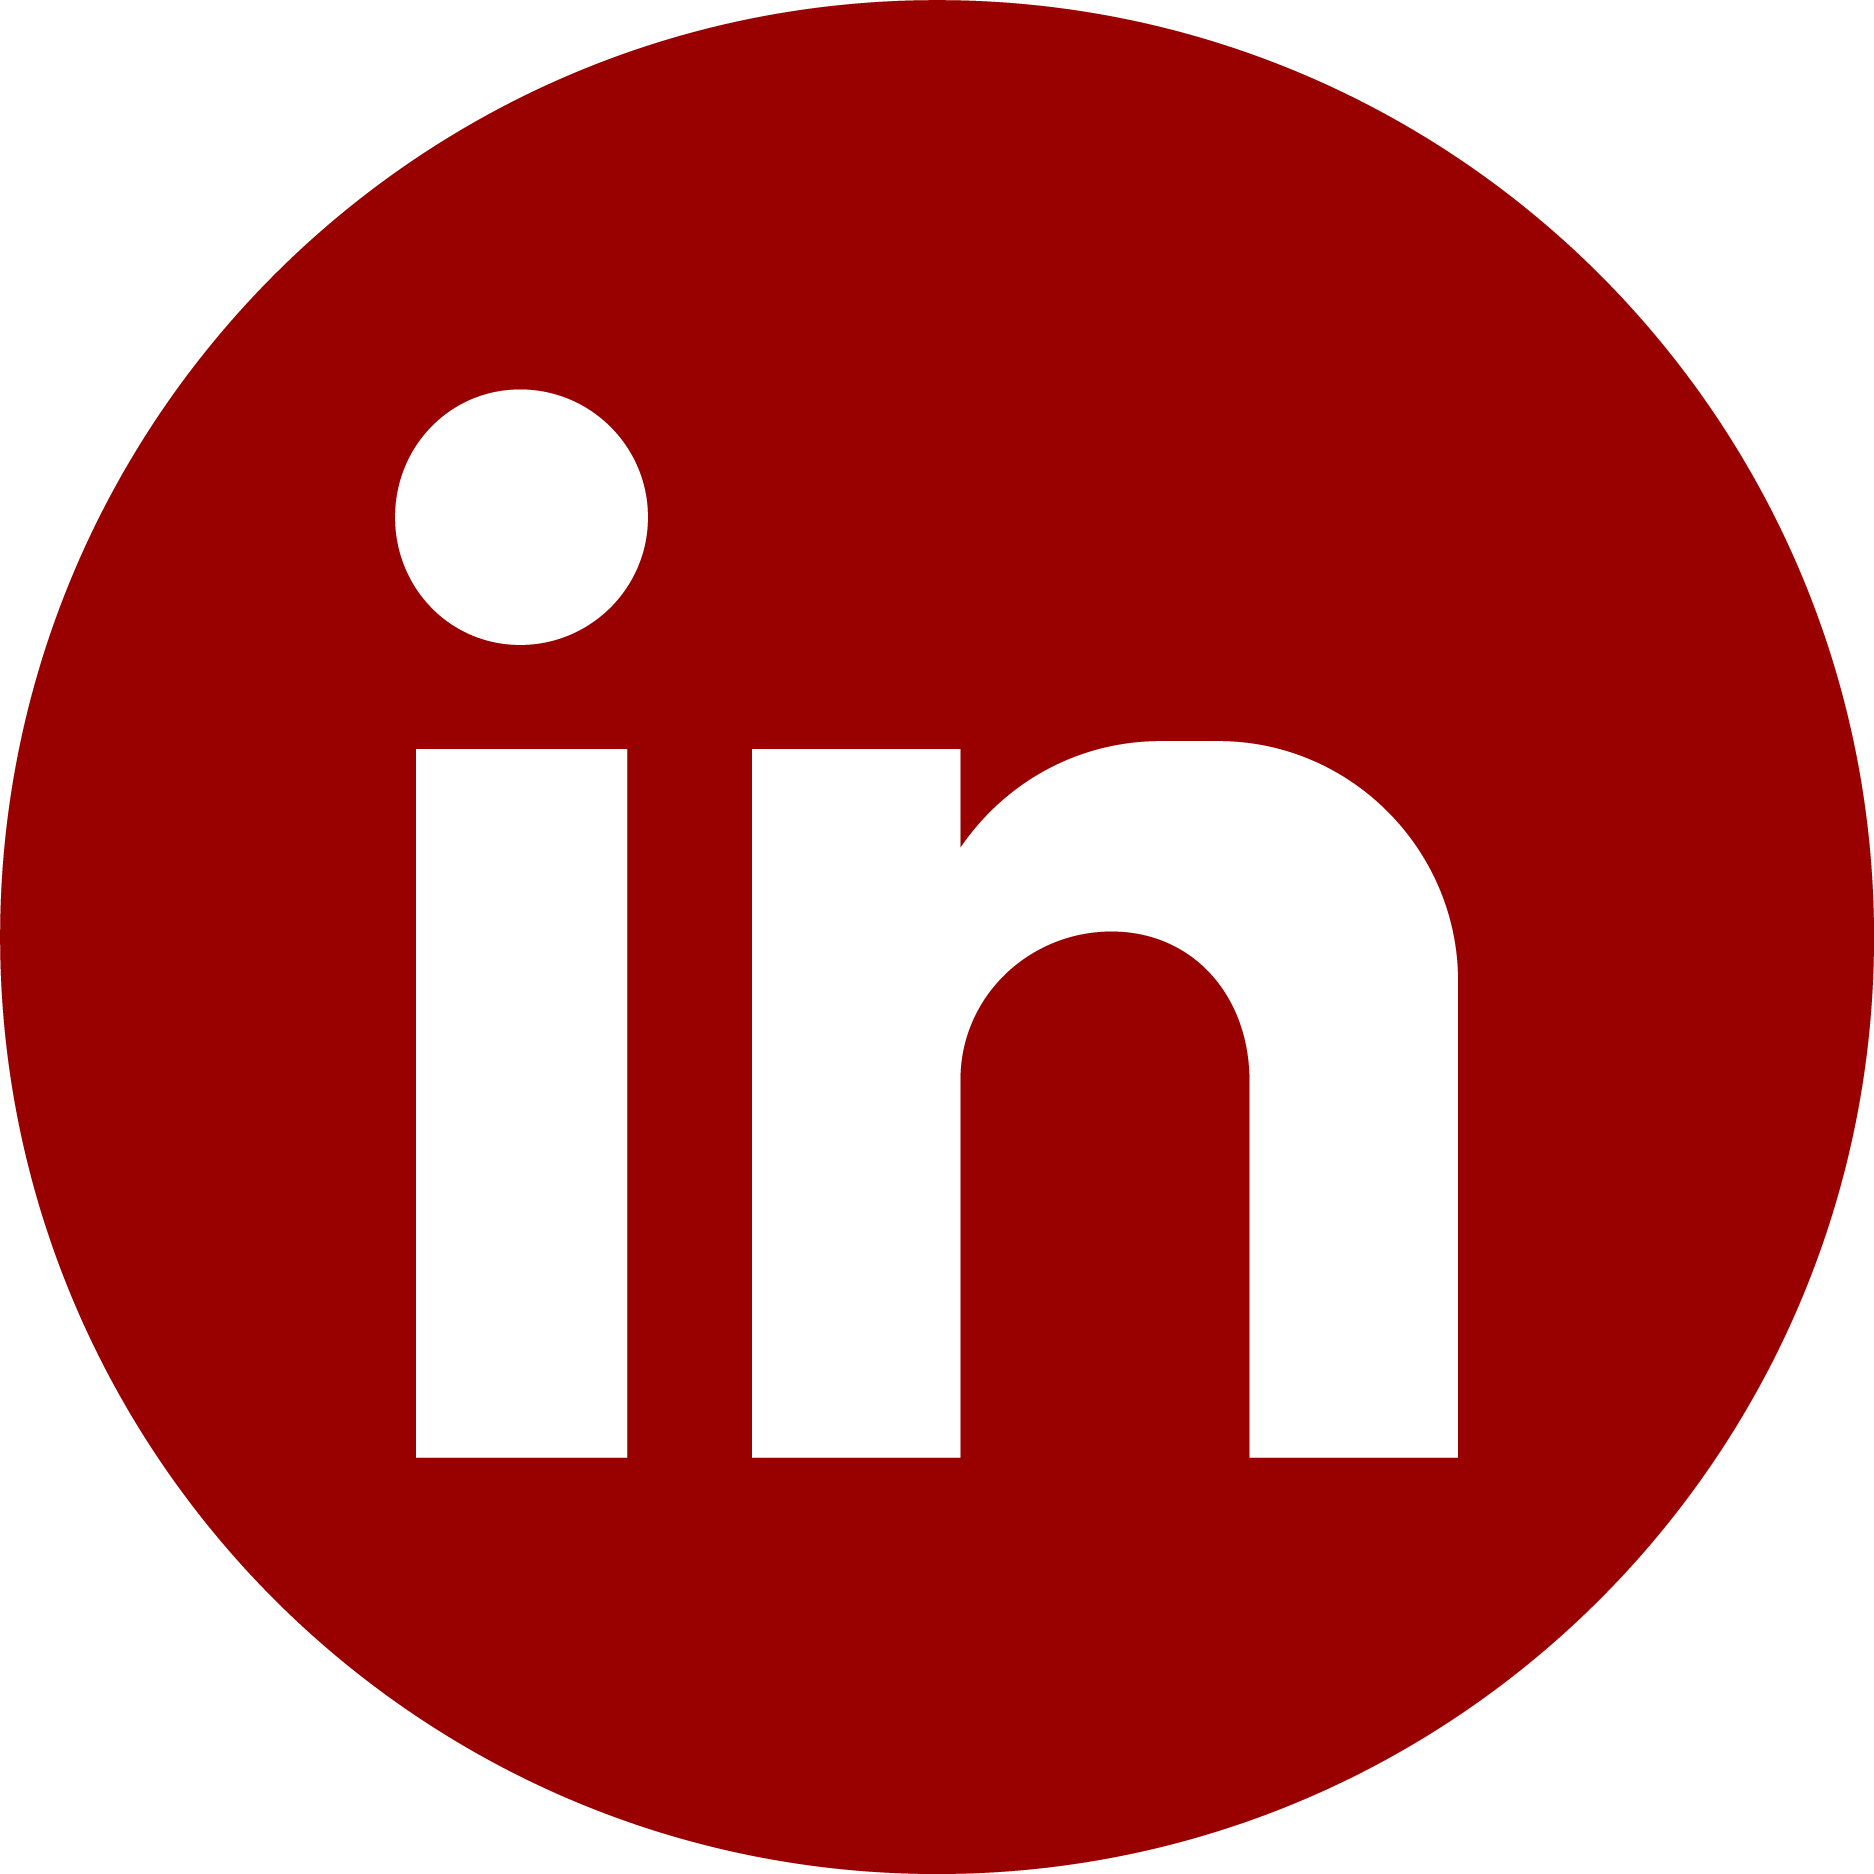 Icon for LinkedIn platform